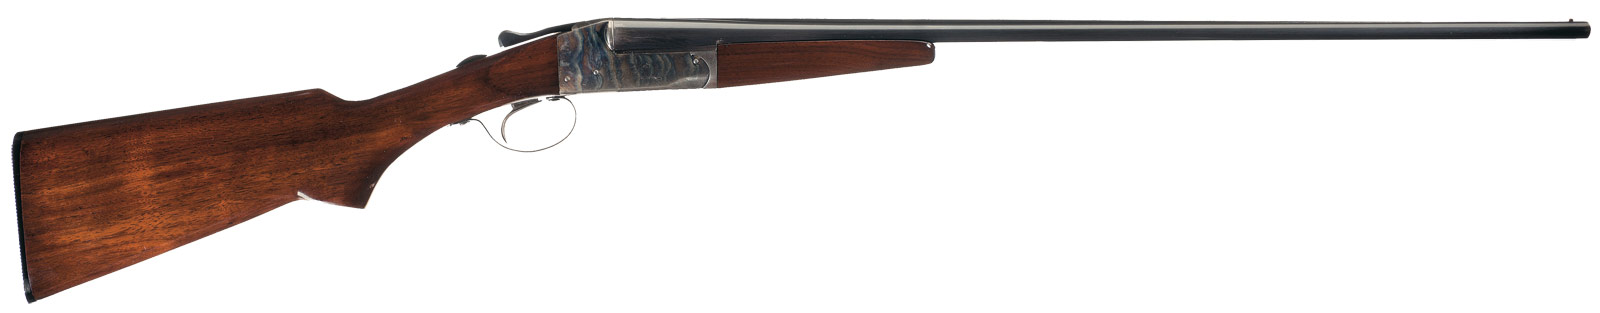 new ithaca gun double barrel shotgun